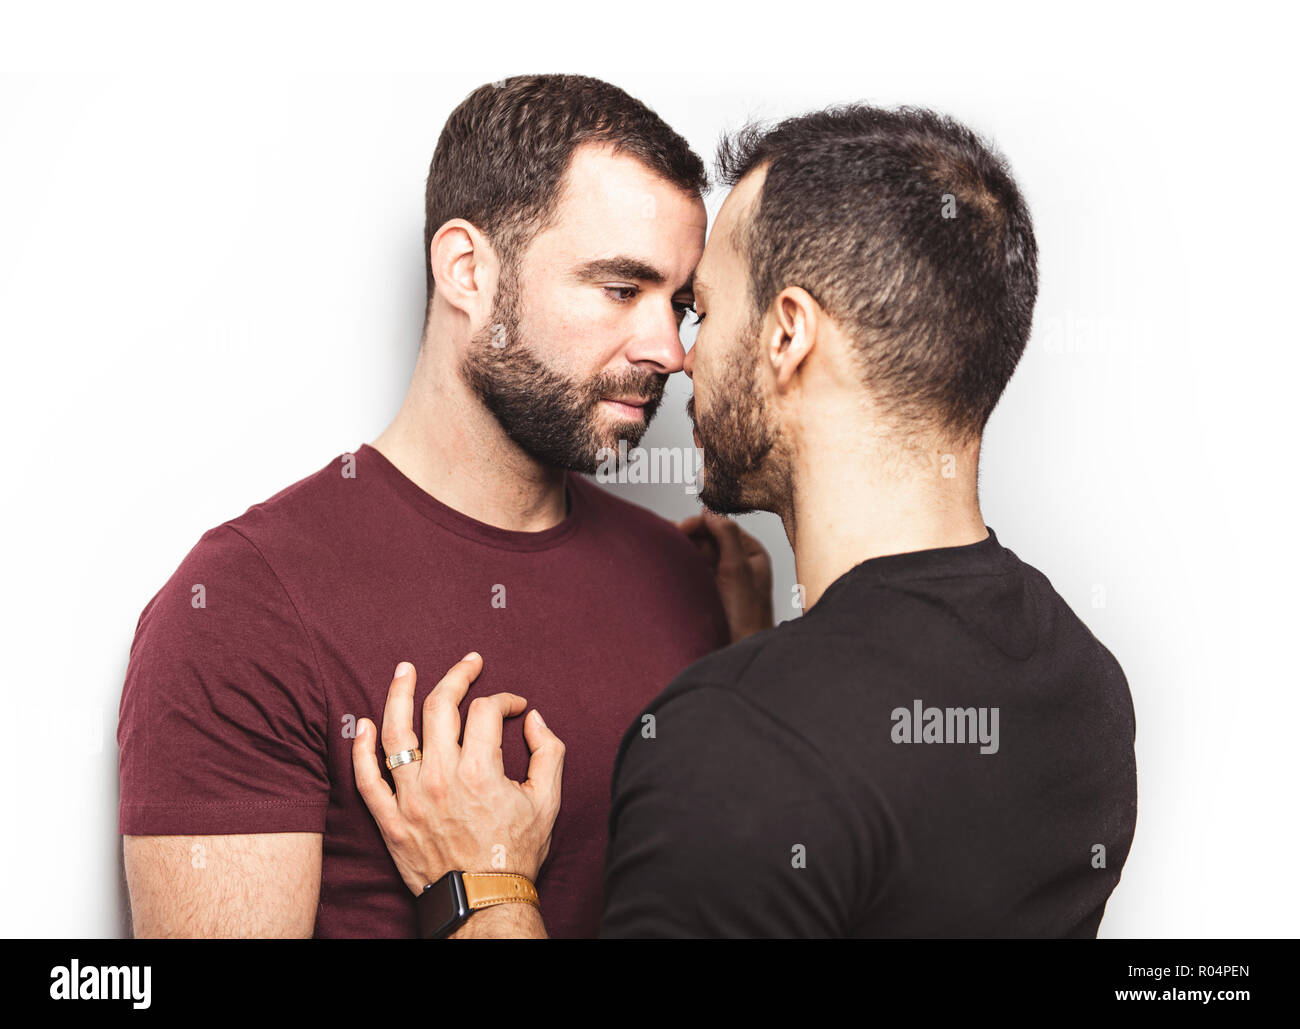 Junge Homosexuelle Homosexuelles Paar lieben einander auf einem weißen Hintergrund. Stockfoto